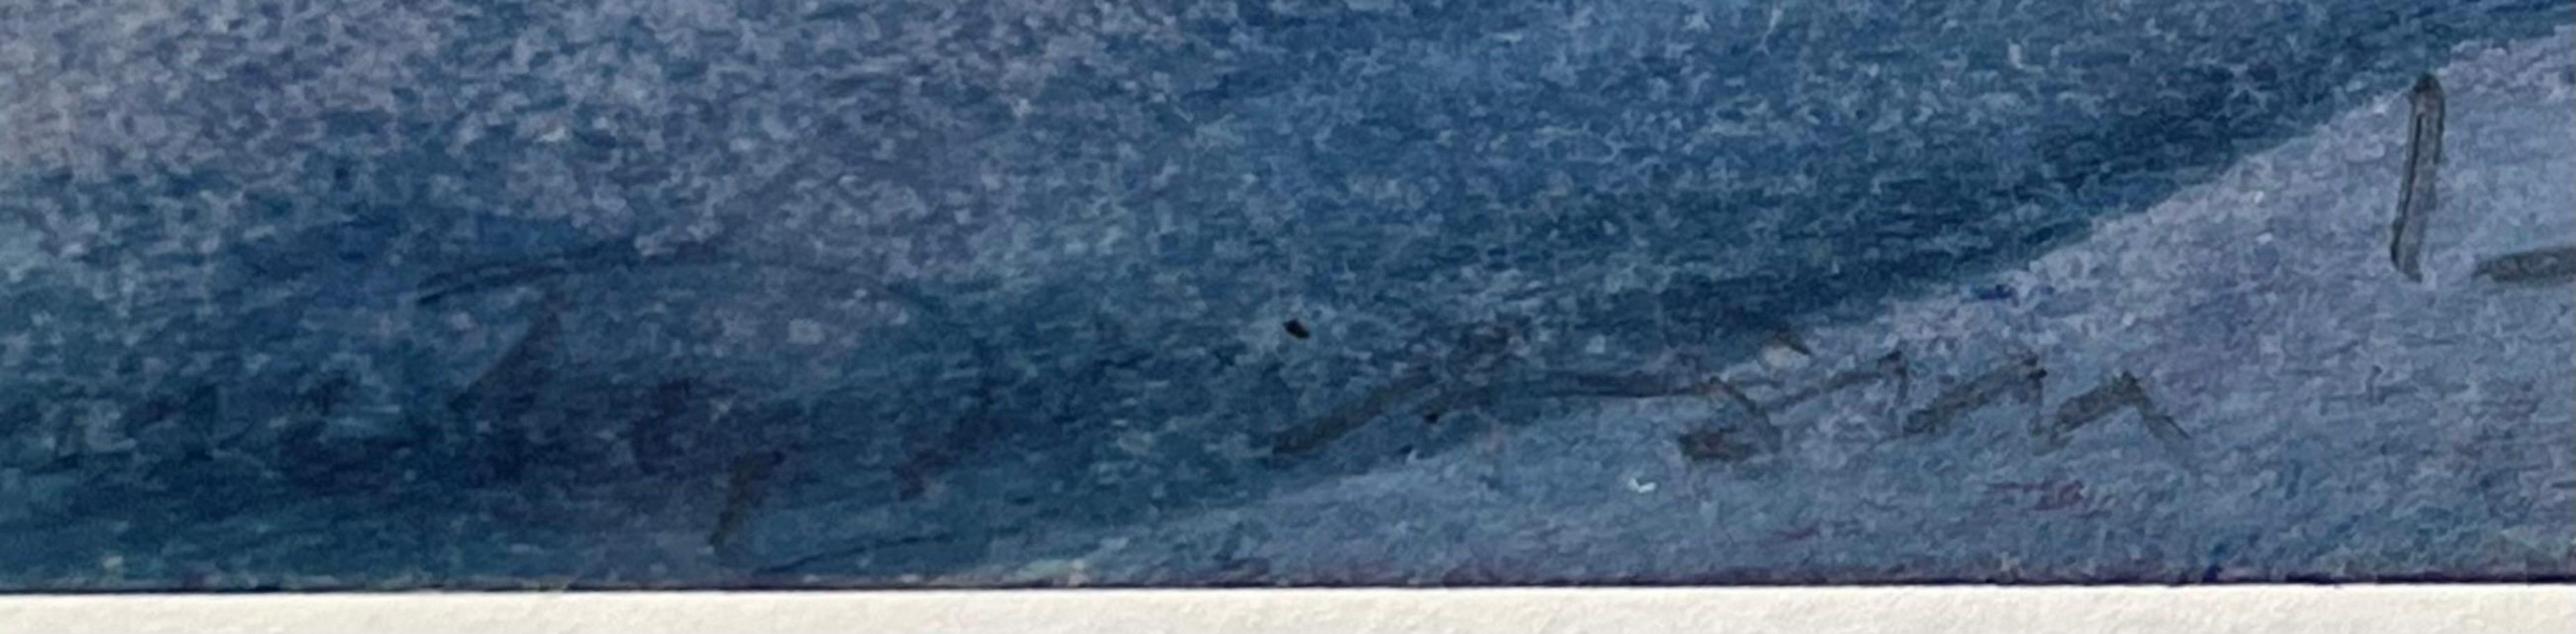 Emily Mason
So Slight a Film (aus der Kunstsammlung der Lehman Brothers), 1978
Öl auf Papier Abstraktes expressionistisches Gemälde
Signiert und datiert 'Emily Mason '78' unten rechts mit Bleistift
Inklusive Rahmen (in handgefertigtem